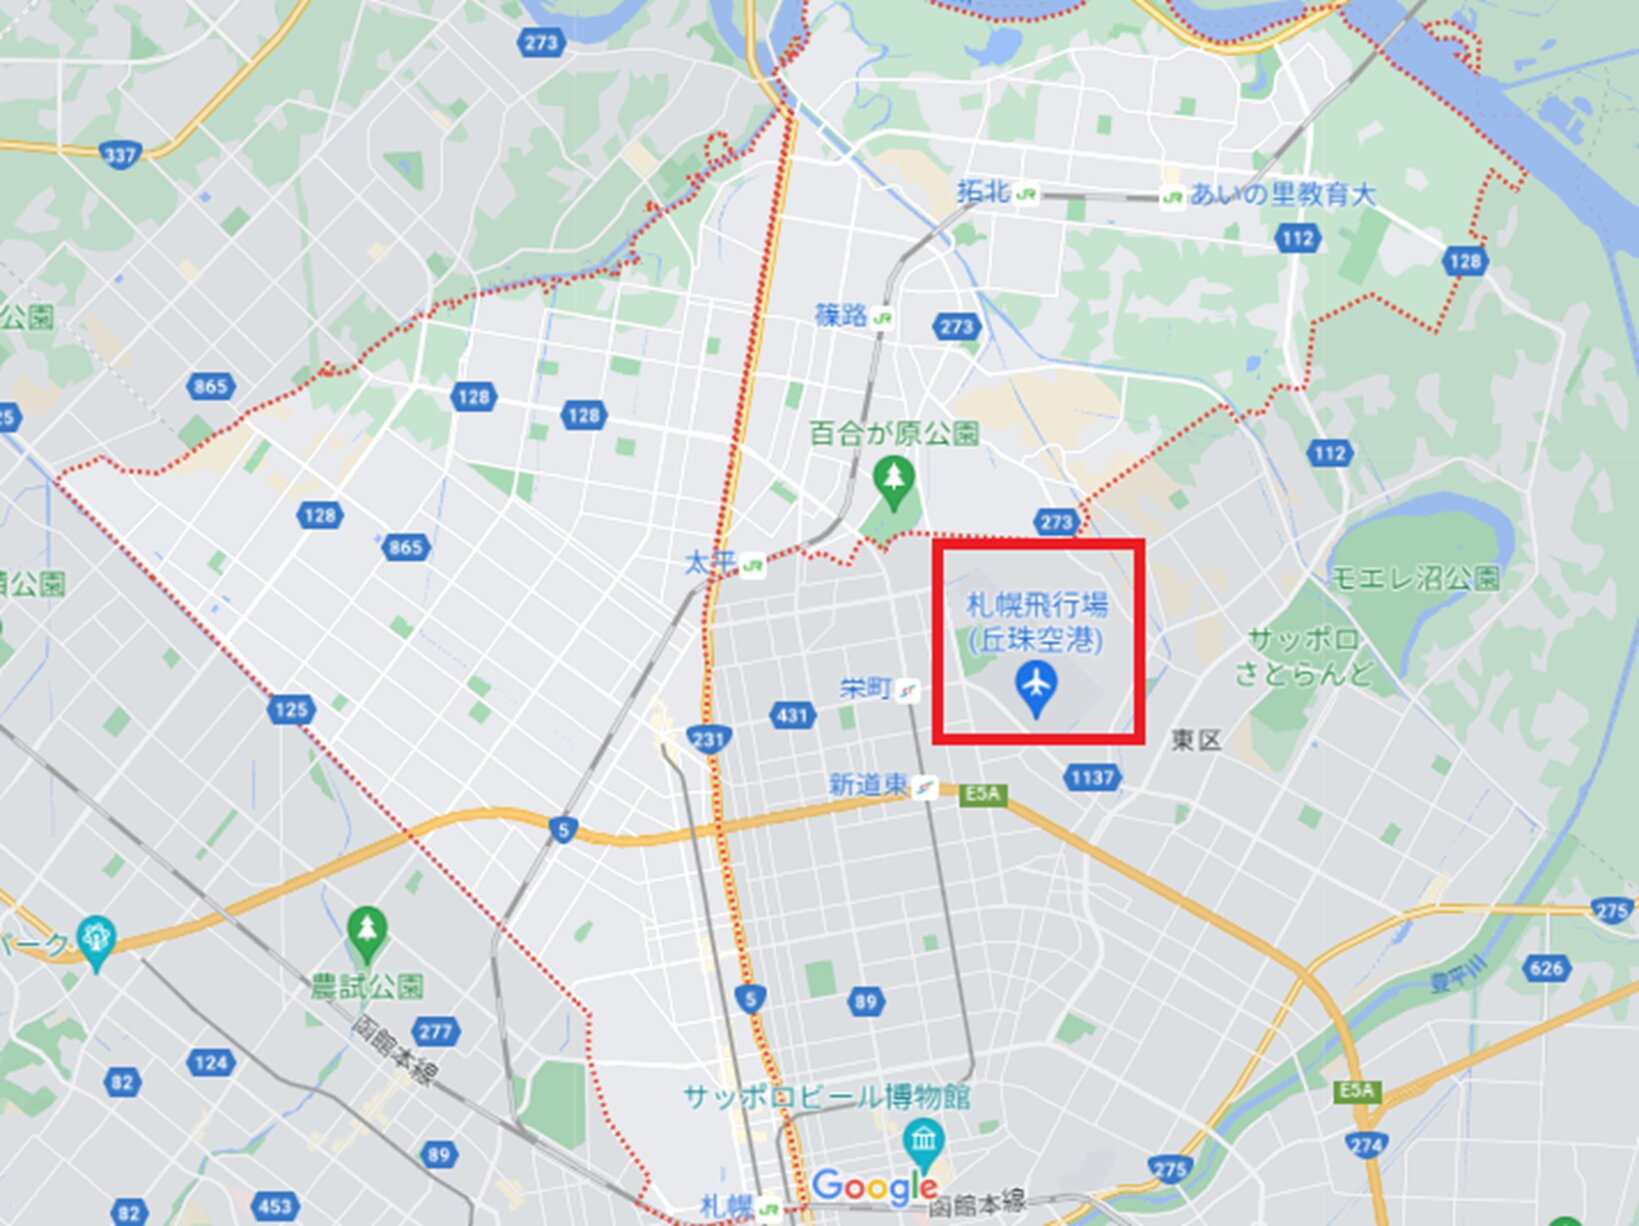 丘珠空港の位置と札幌市北区のエリア　(C)Google